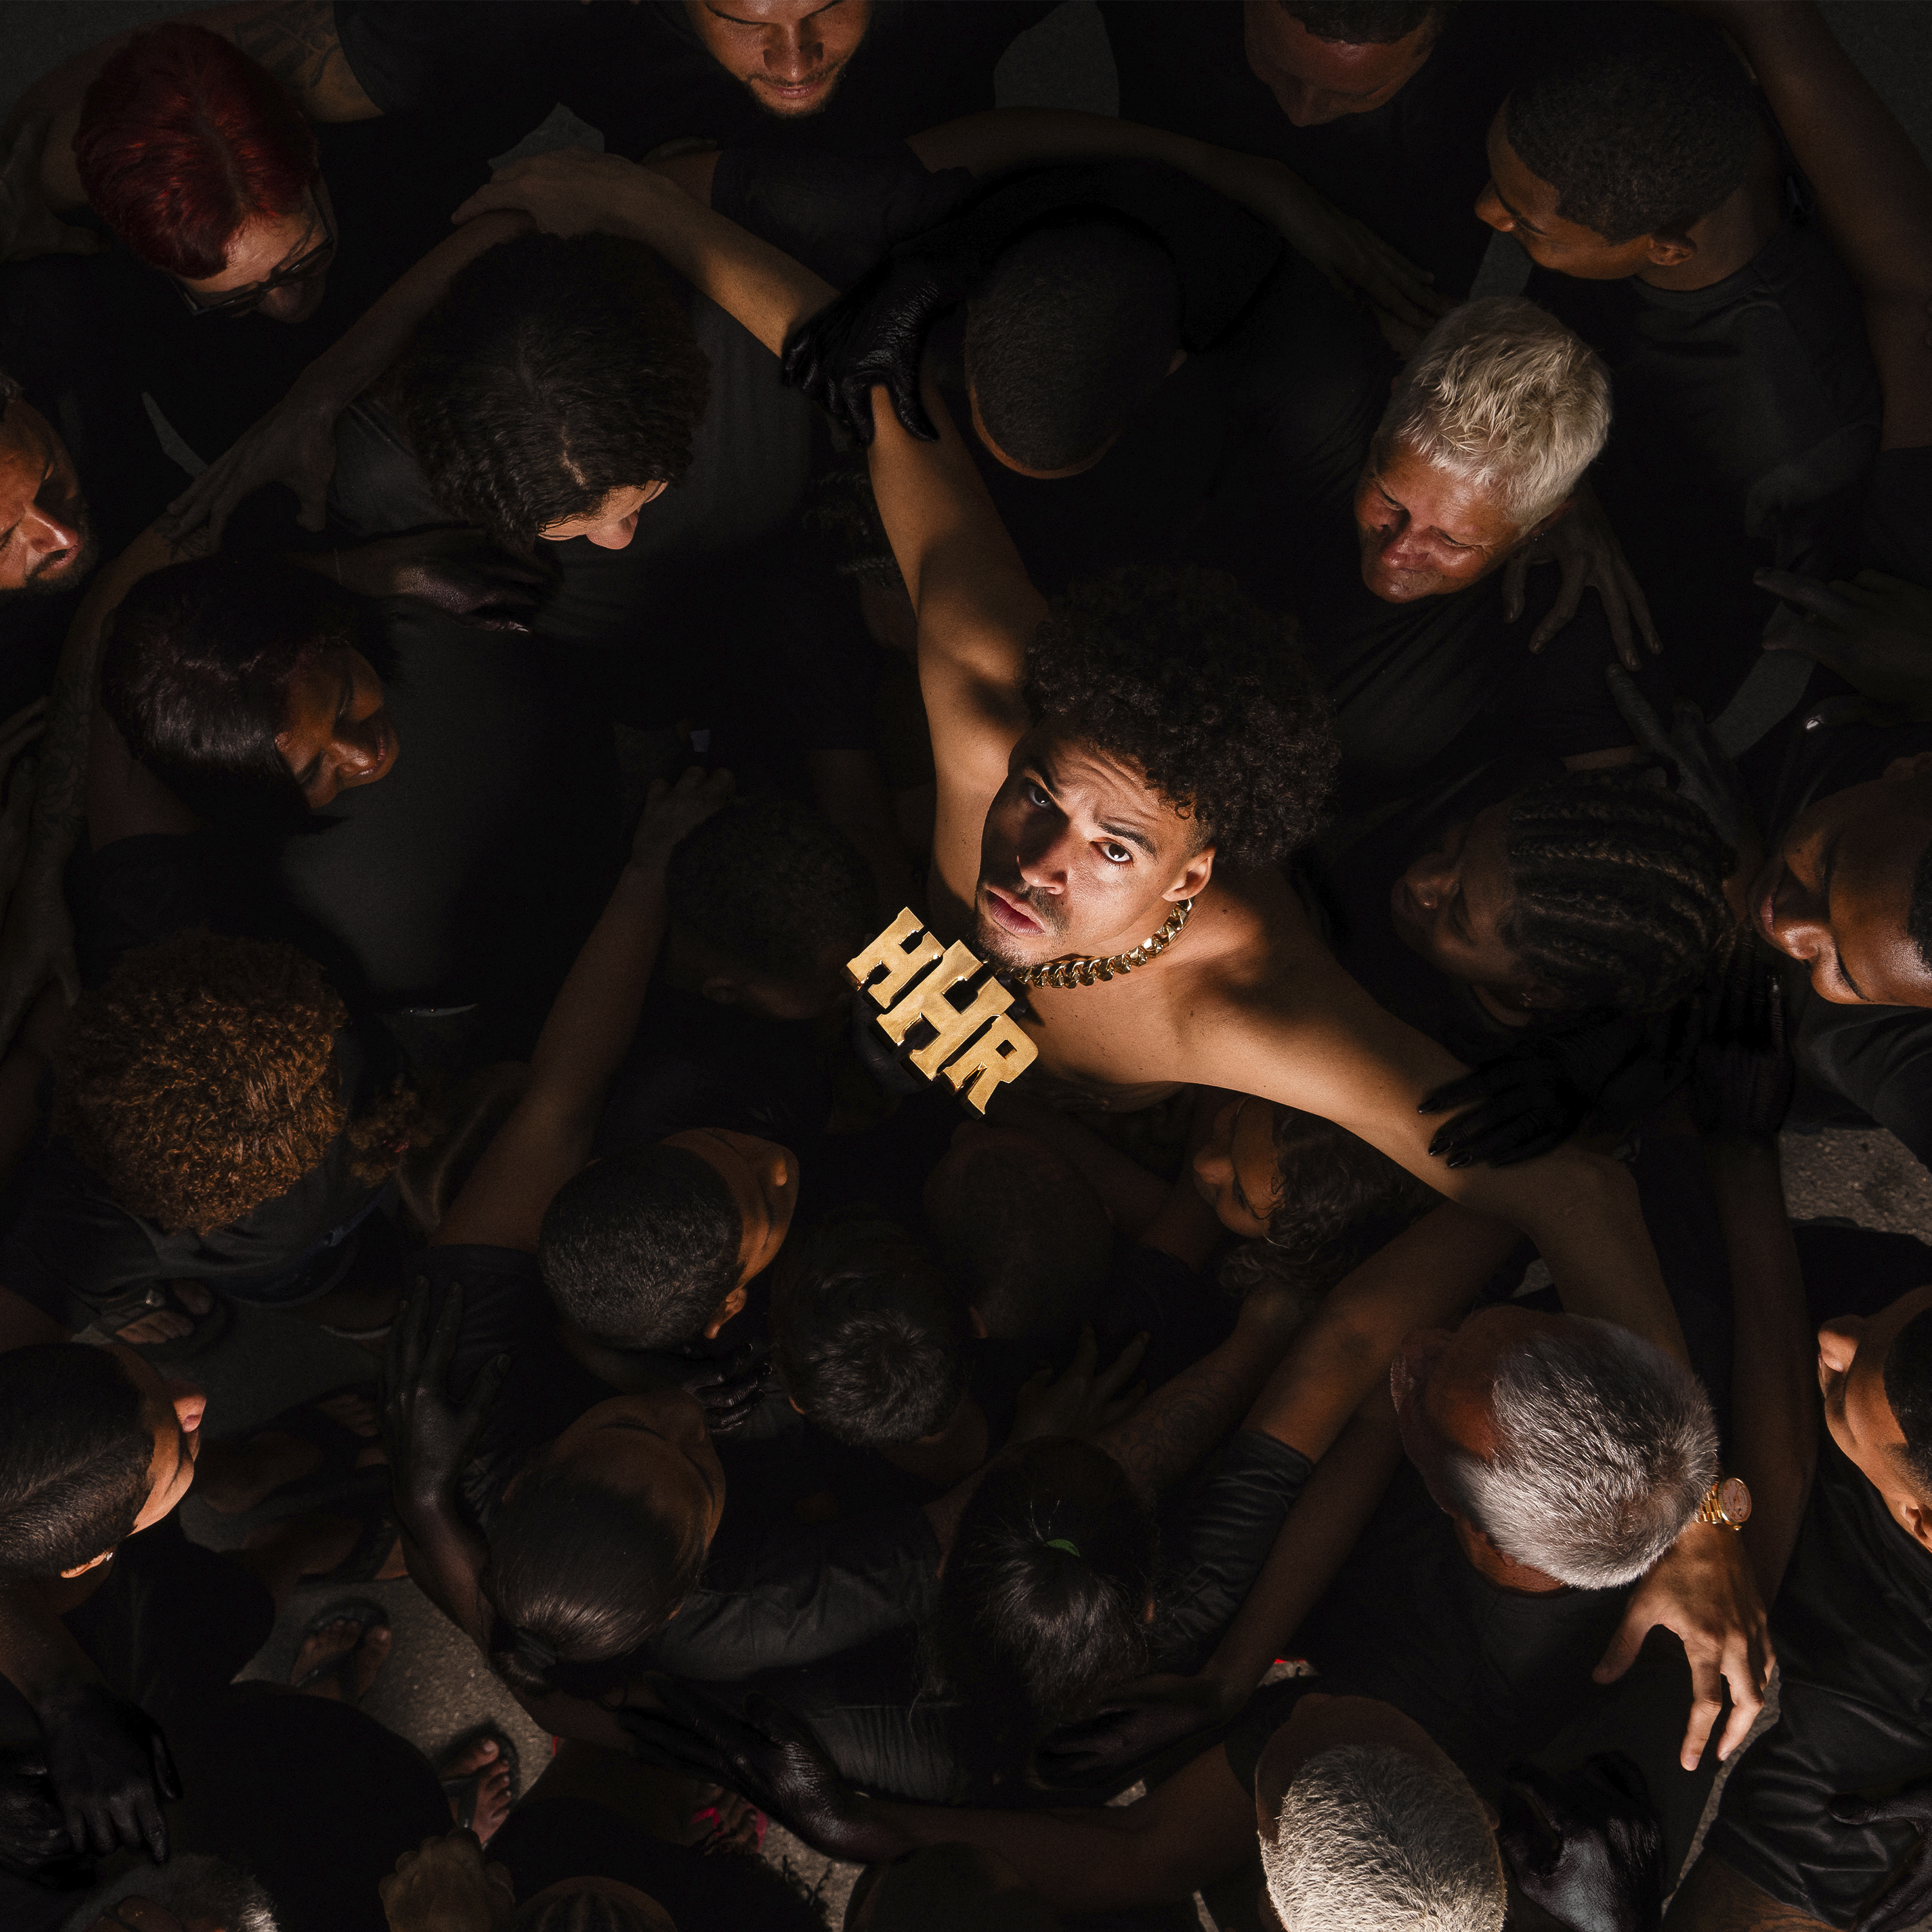 L7NNON retorna com álbum grandioso: “Irrastreável” celebra a periferia com 31 faixas e parcerias de peso